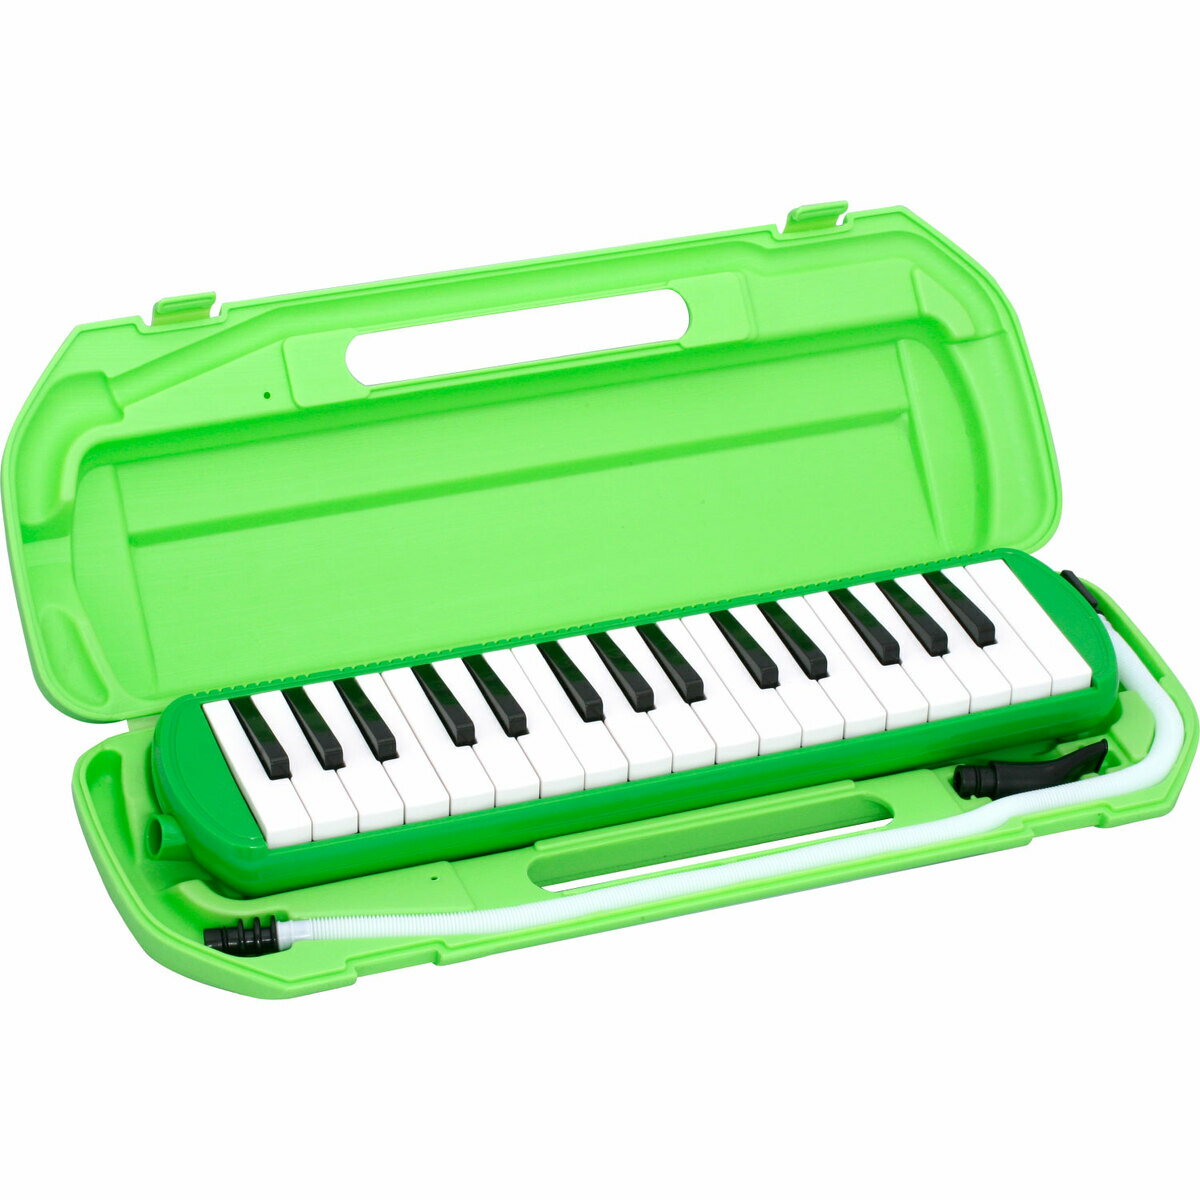 KIKUTANIMM-32 GRE(みどり) 鍵盤ハーモニカ「メロディメイト」 一般的なアルト32鍵仕様のMM-32。音域はFからC3となっていて、子供たちが習う楽曲の音域はほとんどカバーできます。またカラフルな製品は目を引き、幼稚園などで使っていても楽器が迷子になる心配がないのも大きな特徴です。交換用の立奏用、卓奏用パイプセットもご用意しております。2016年4月以前製造モデル（初期セットの立奏用パイプがストレートタイプの場合）　MM-P1現行モデル用（初期セットの立奏用パイプがカーブタイプの場合）MM-P1NSPECCOLORBLUE, PINK, GREEN本体寸法横幅420mm/縦幅104mm/高さ48mmケース寸法横幅465mm/縦幅180mm/高さ60mm本体重量570g総重量（ケース、付属品込み）1040g鍵数アルト32鍵音域f〜c3本体中空二重ブローケース入り付属品中空二重ブローケース、立奏用唄口、卓奏用パイプサイズW420×D104×H48mm 5